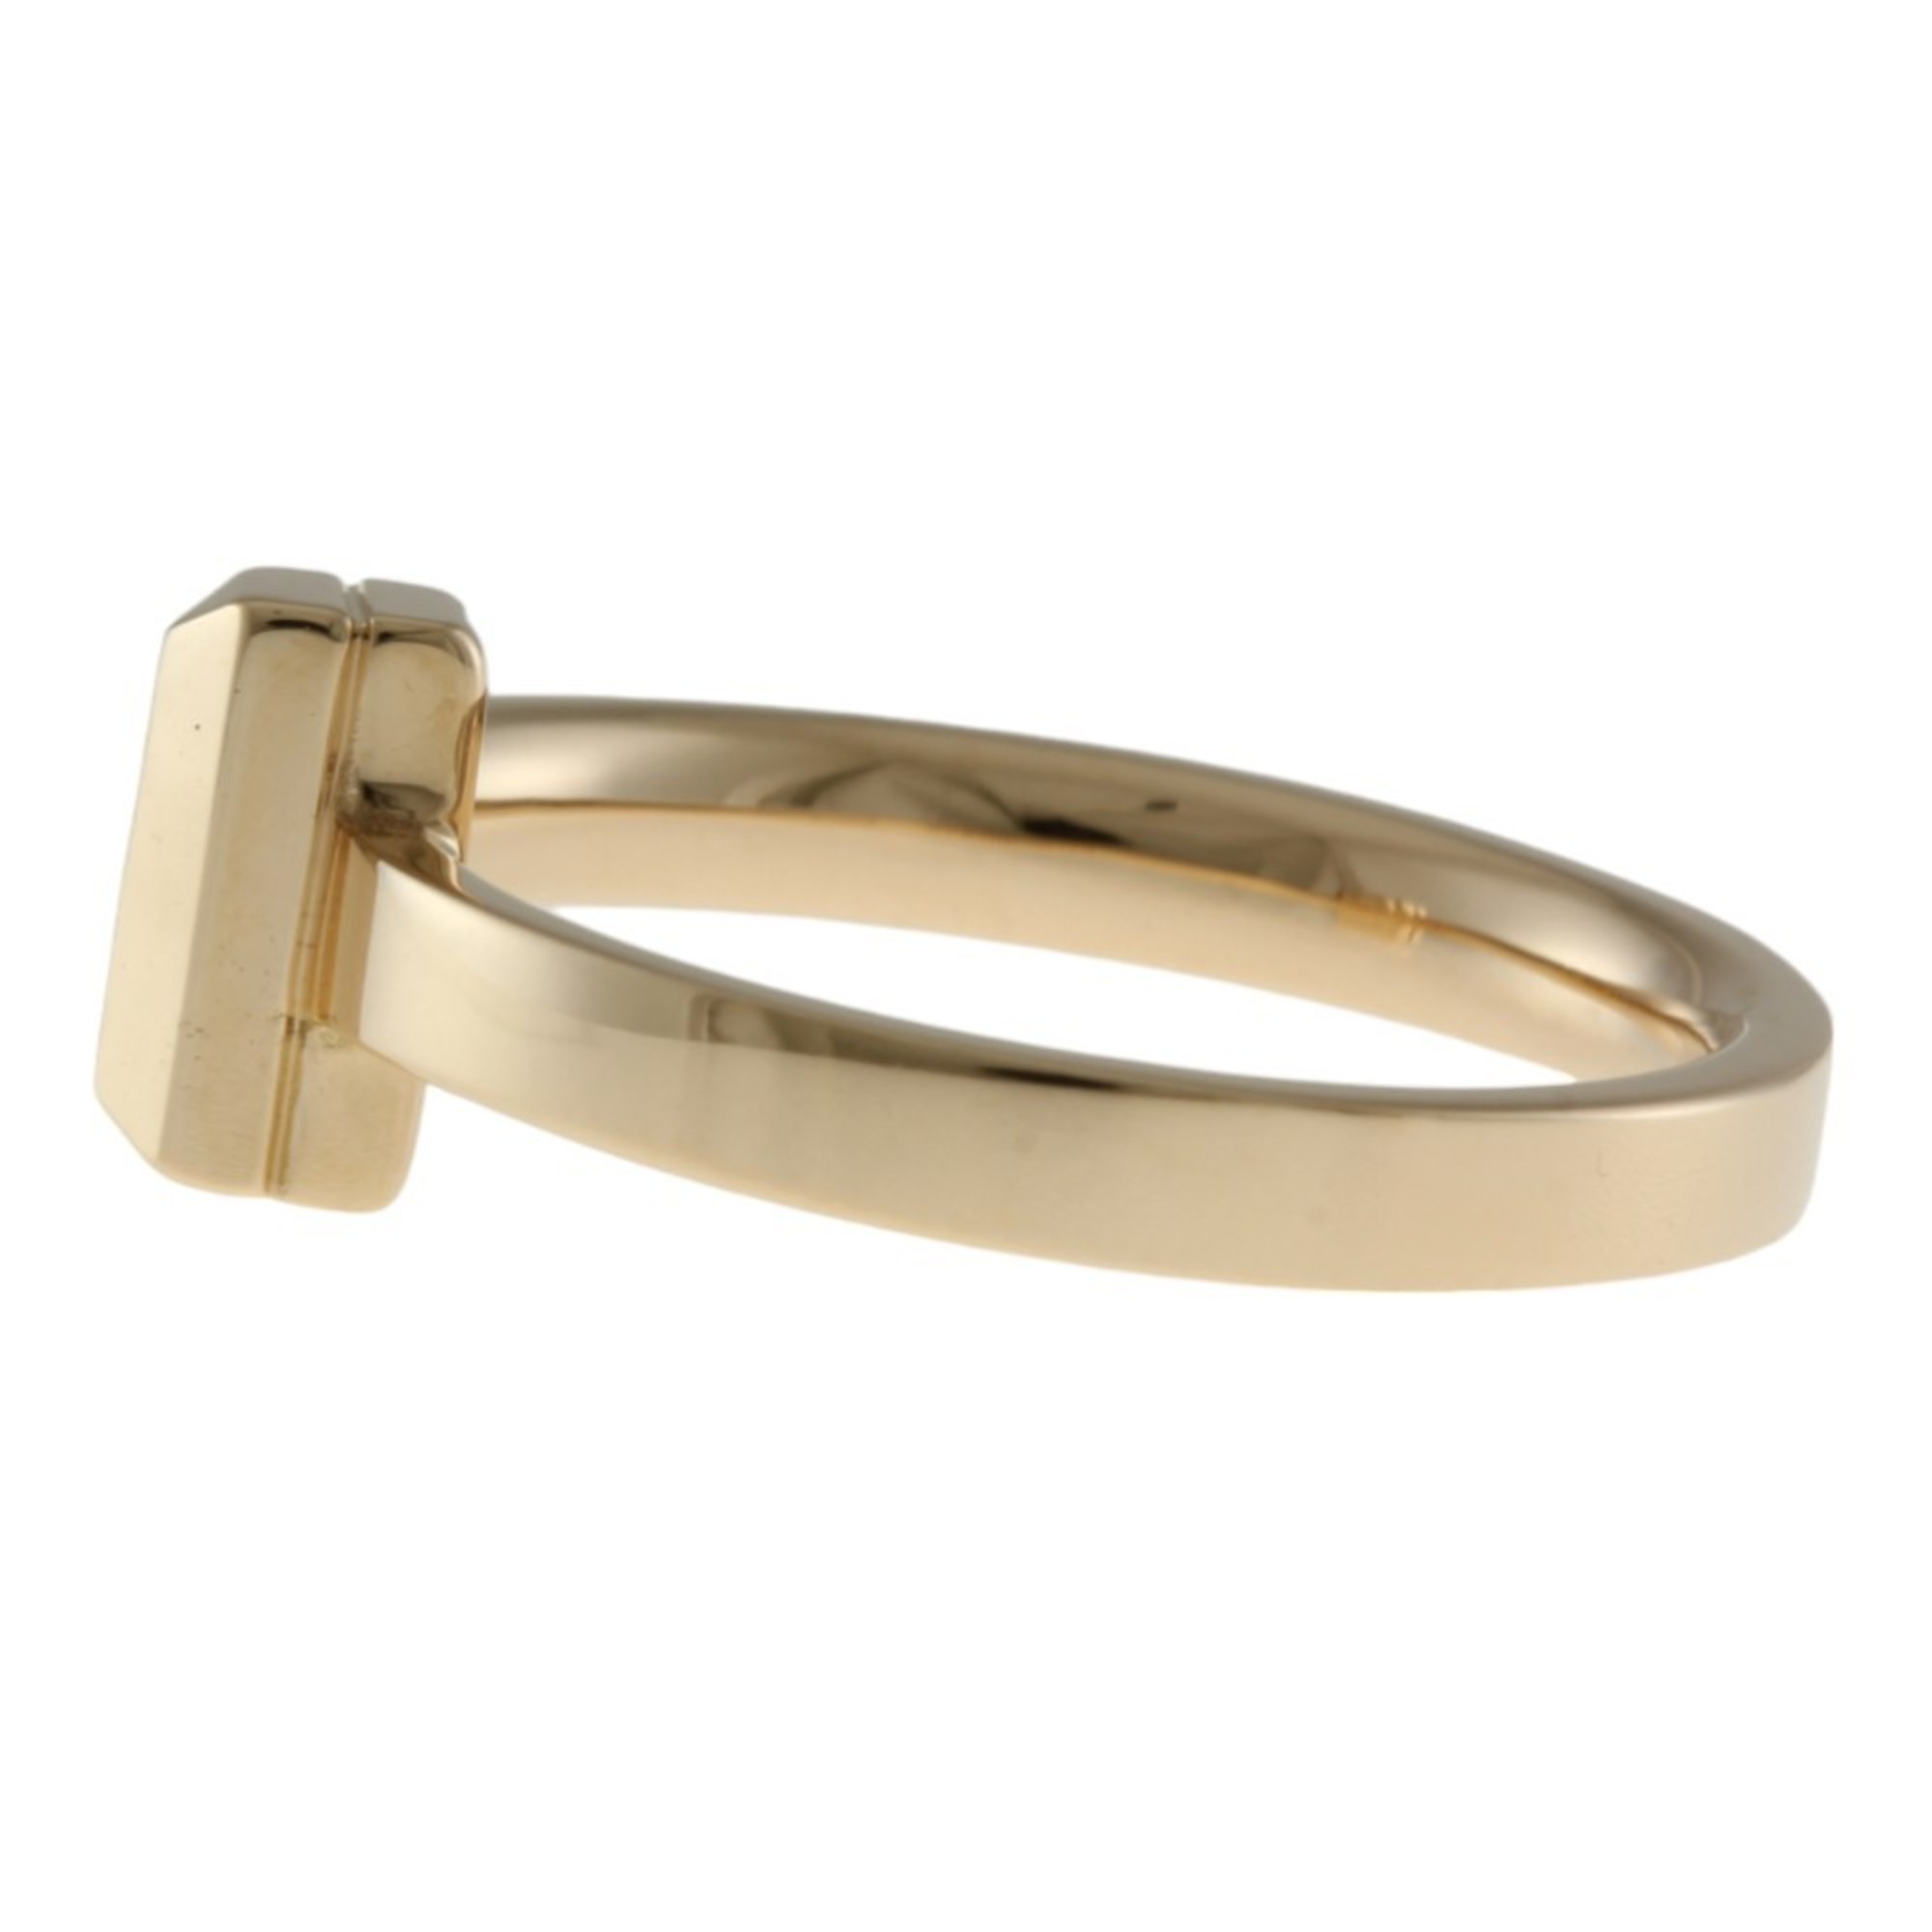 Tiffany T-One Narrow Ring, Size 8.5, 18k Gold, Women's, TIFFANY&Co.